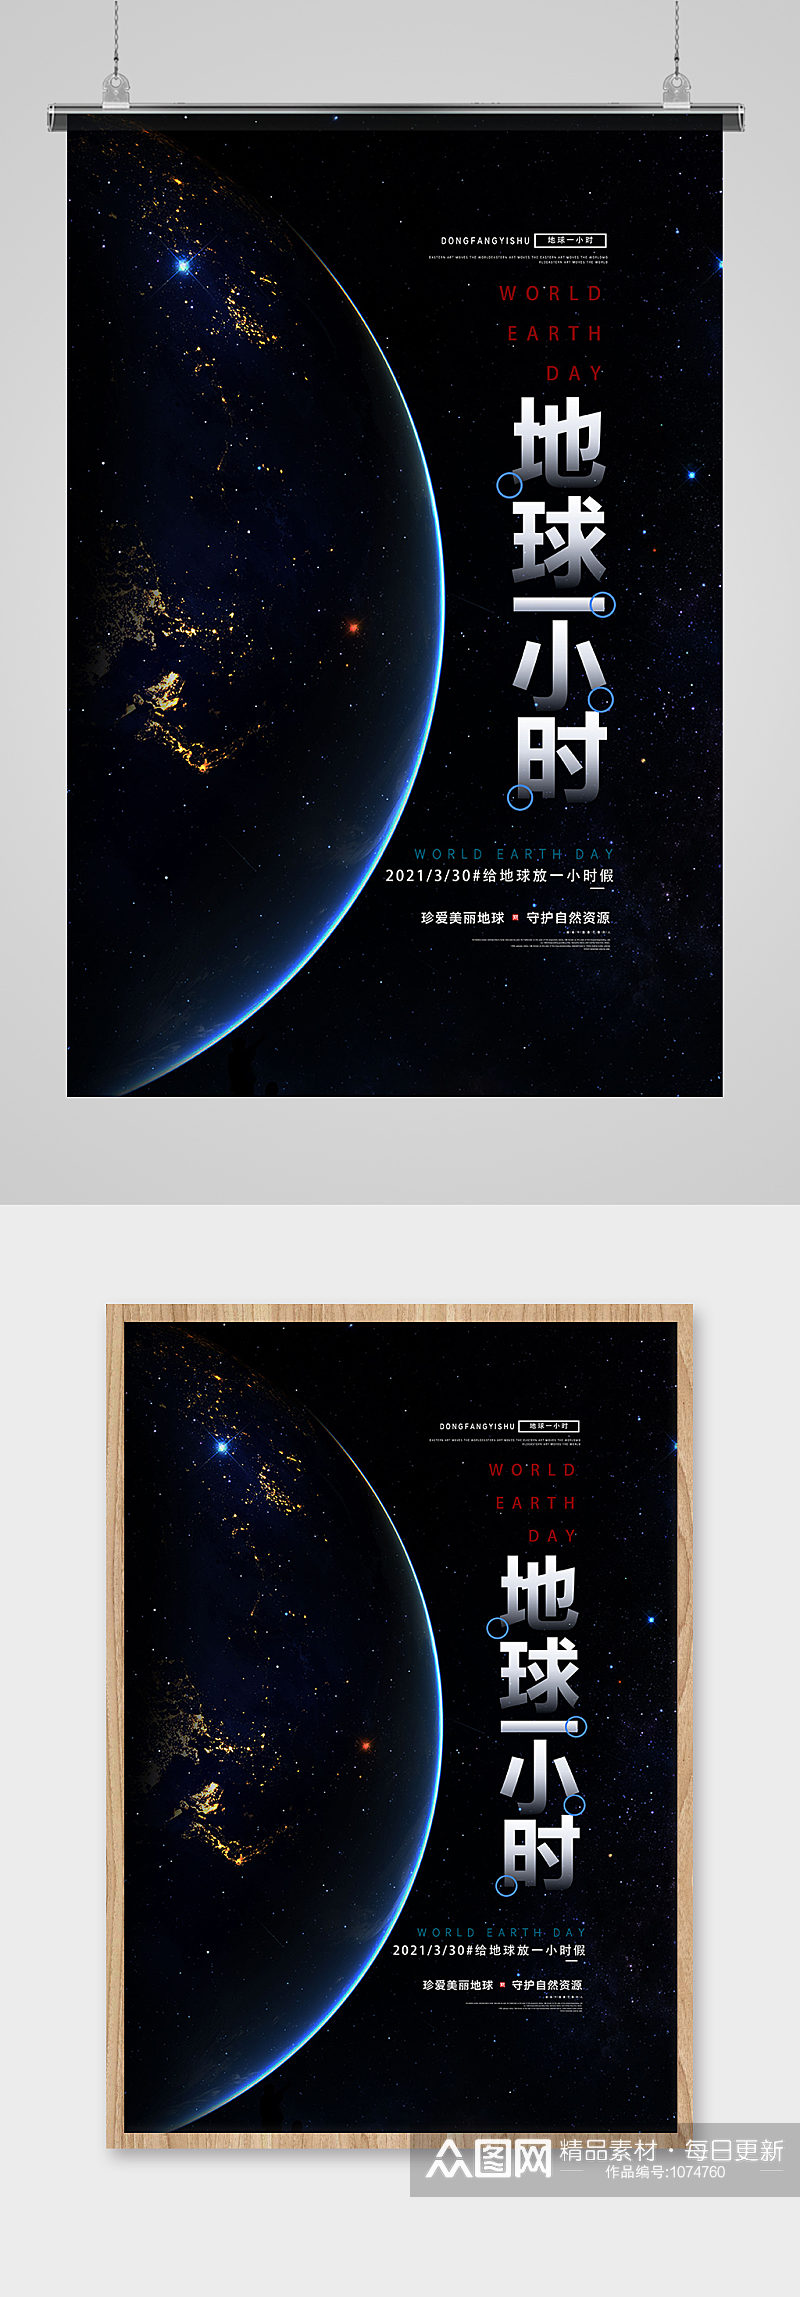 蓝色星空地球一小时公益宣传海报设计素材